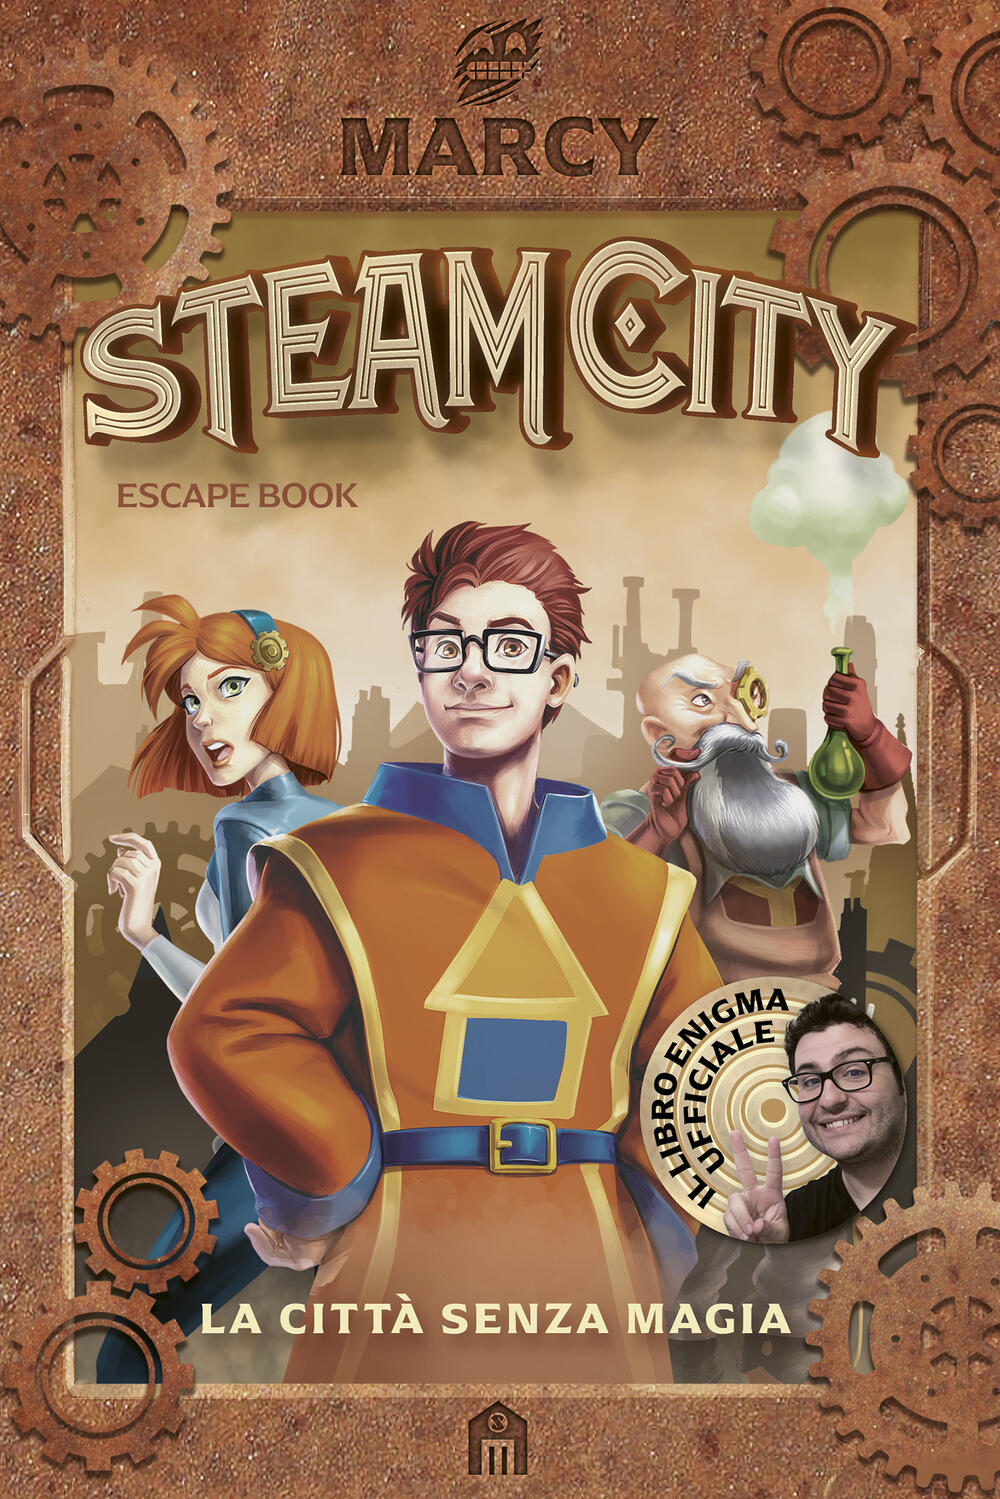 Steam City. La città senza magia. Escape book di Marcy - Brossura - LIBRI  - Il Libraio